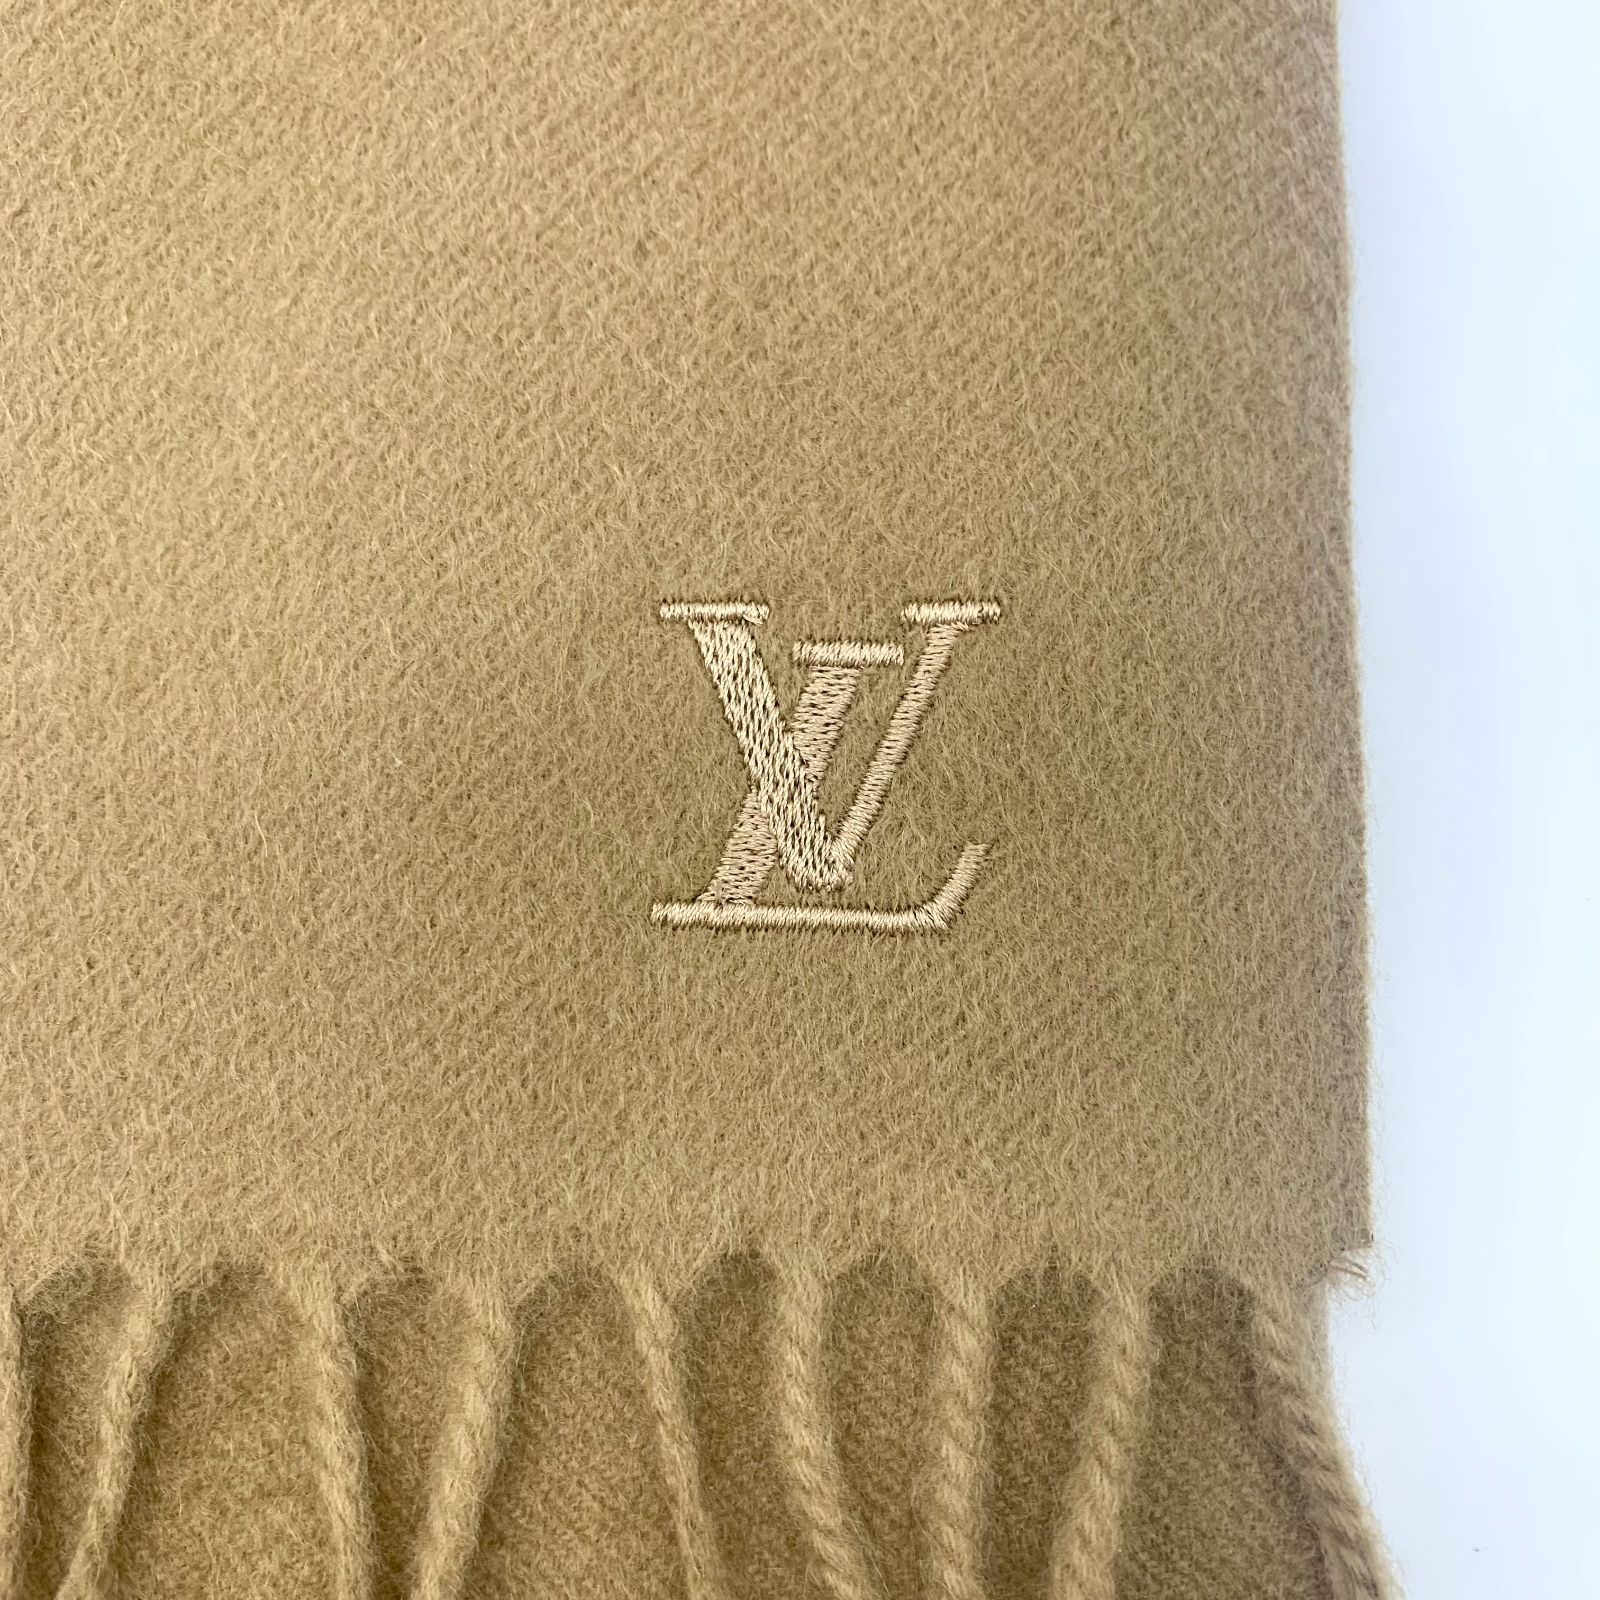 ▽【美品】Louis Vuitton/ルイヴィトン エシャルプ ジェラム マフラー